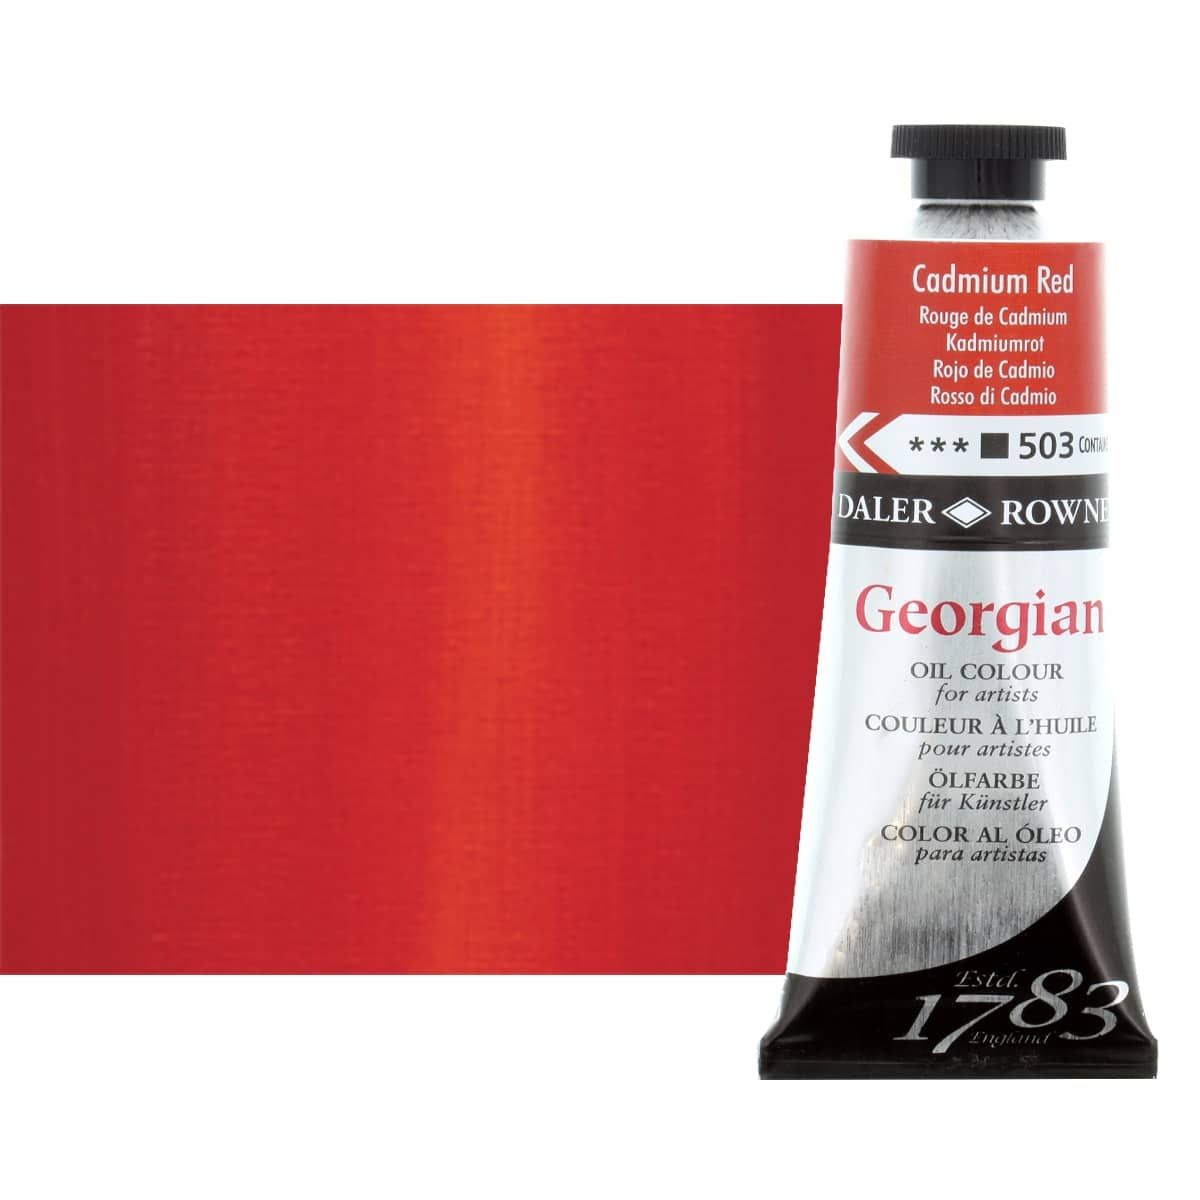 Daler-Rowney Georgian Oil Color 75ml Tube - Cadmium Red